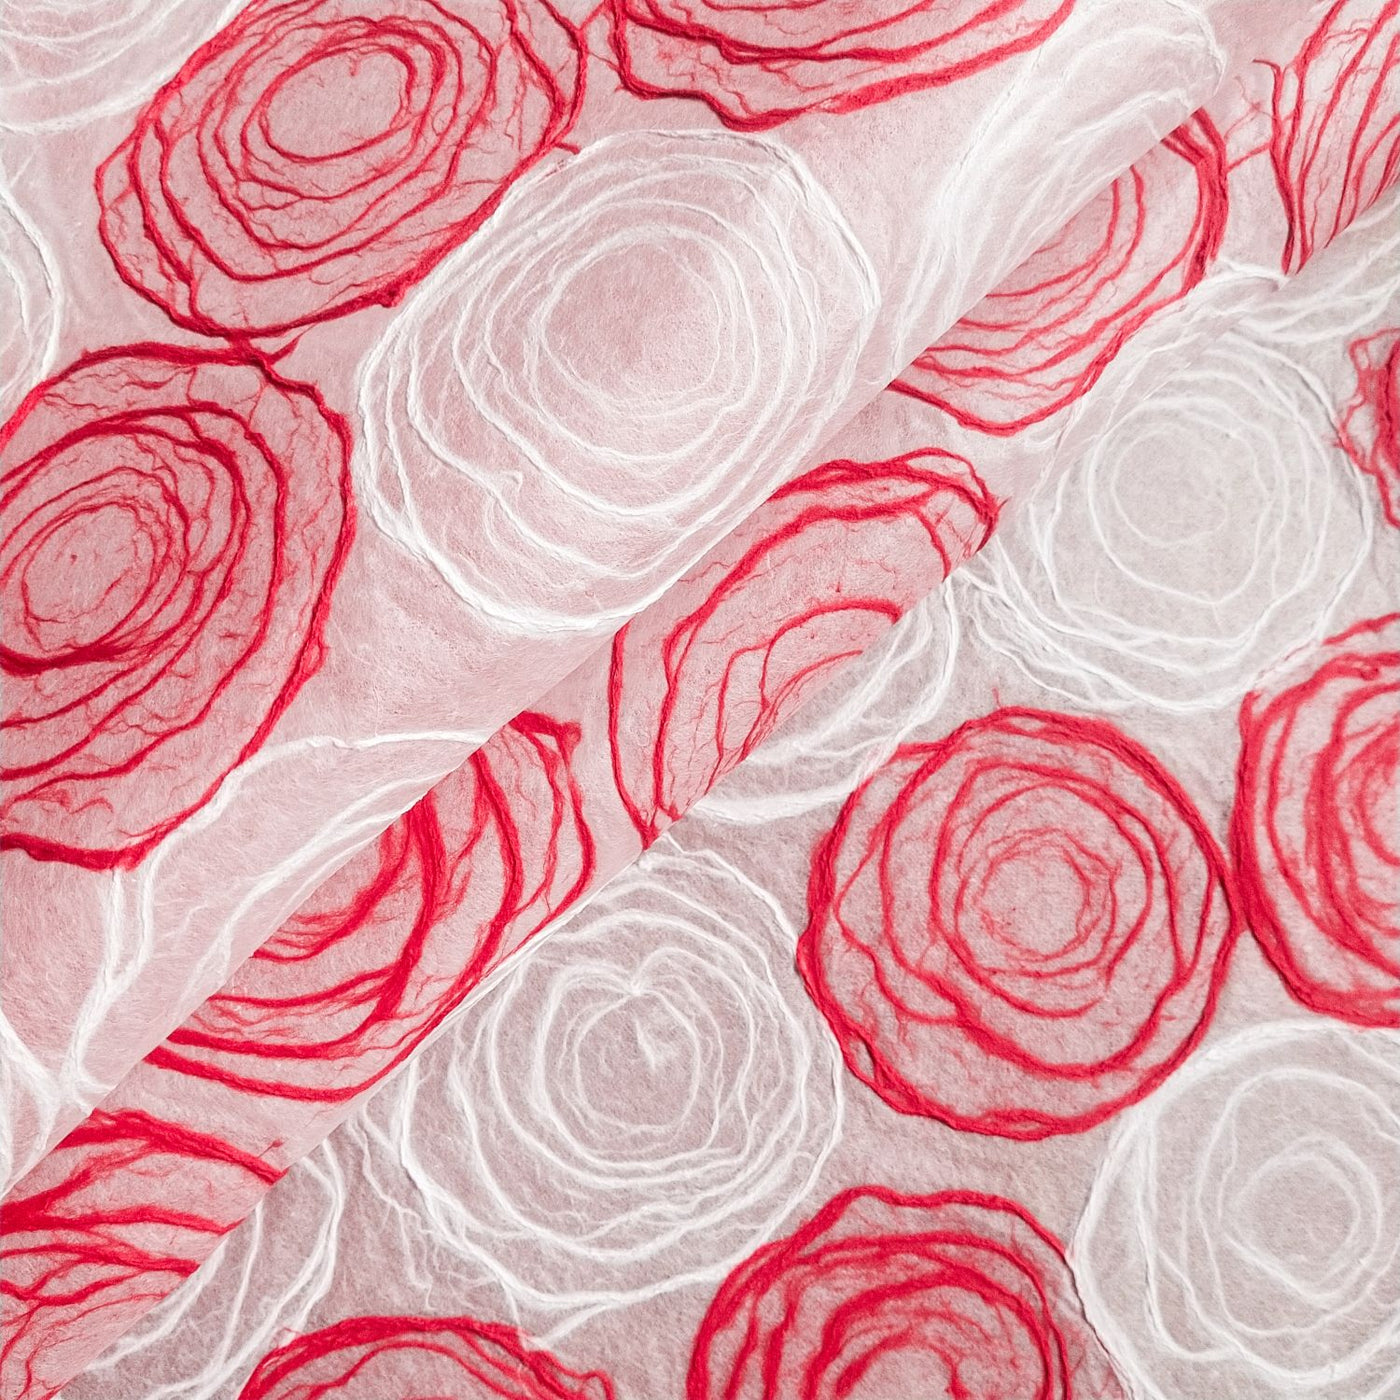 Papel Rose Kozo hecho a mano (rojo y blanco)